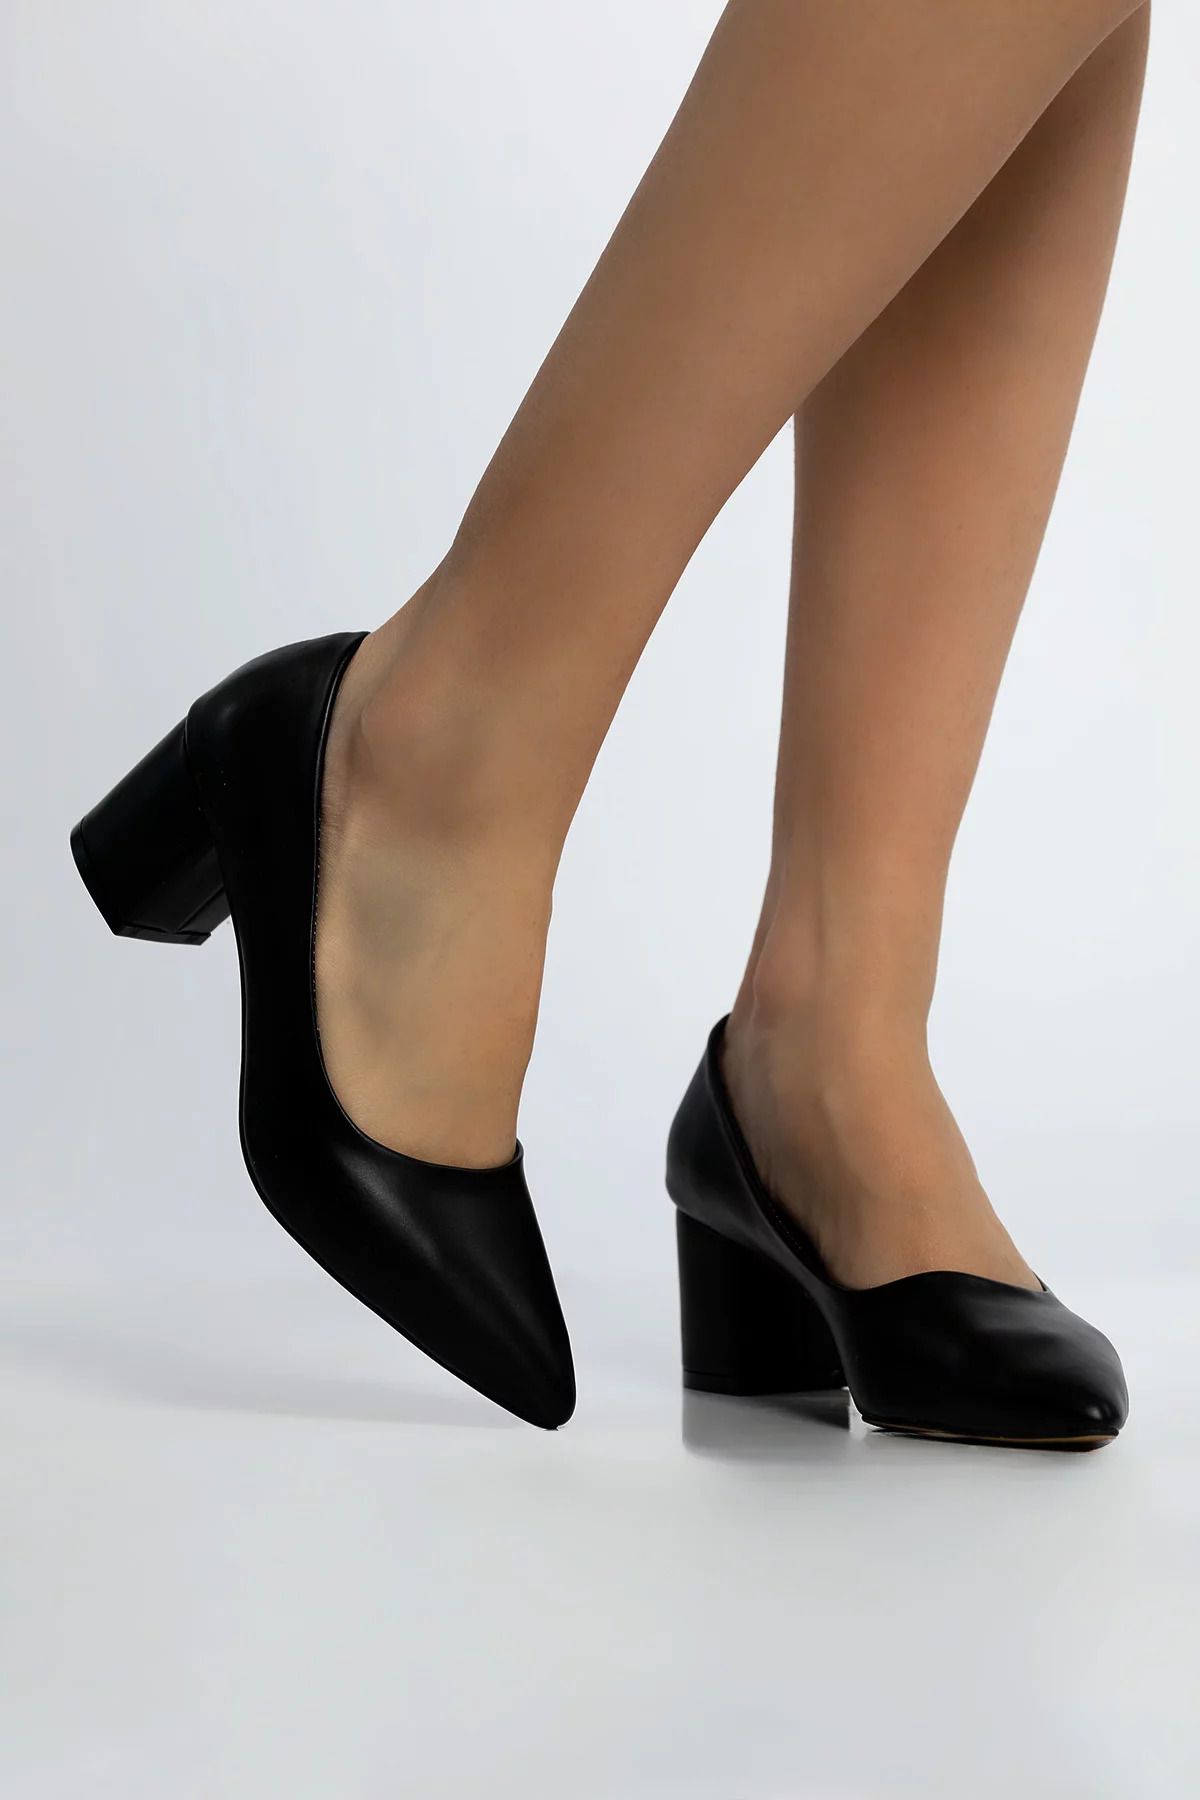 Julude Siyah Kadın Kalın Topuklu Ayakkabı